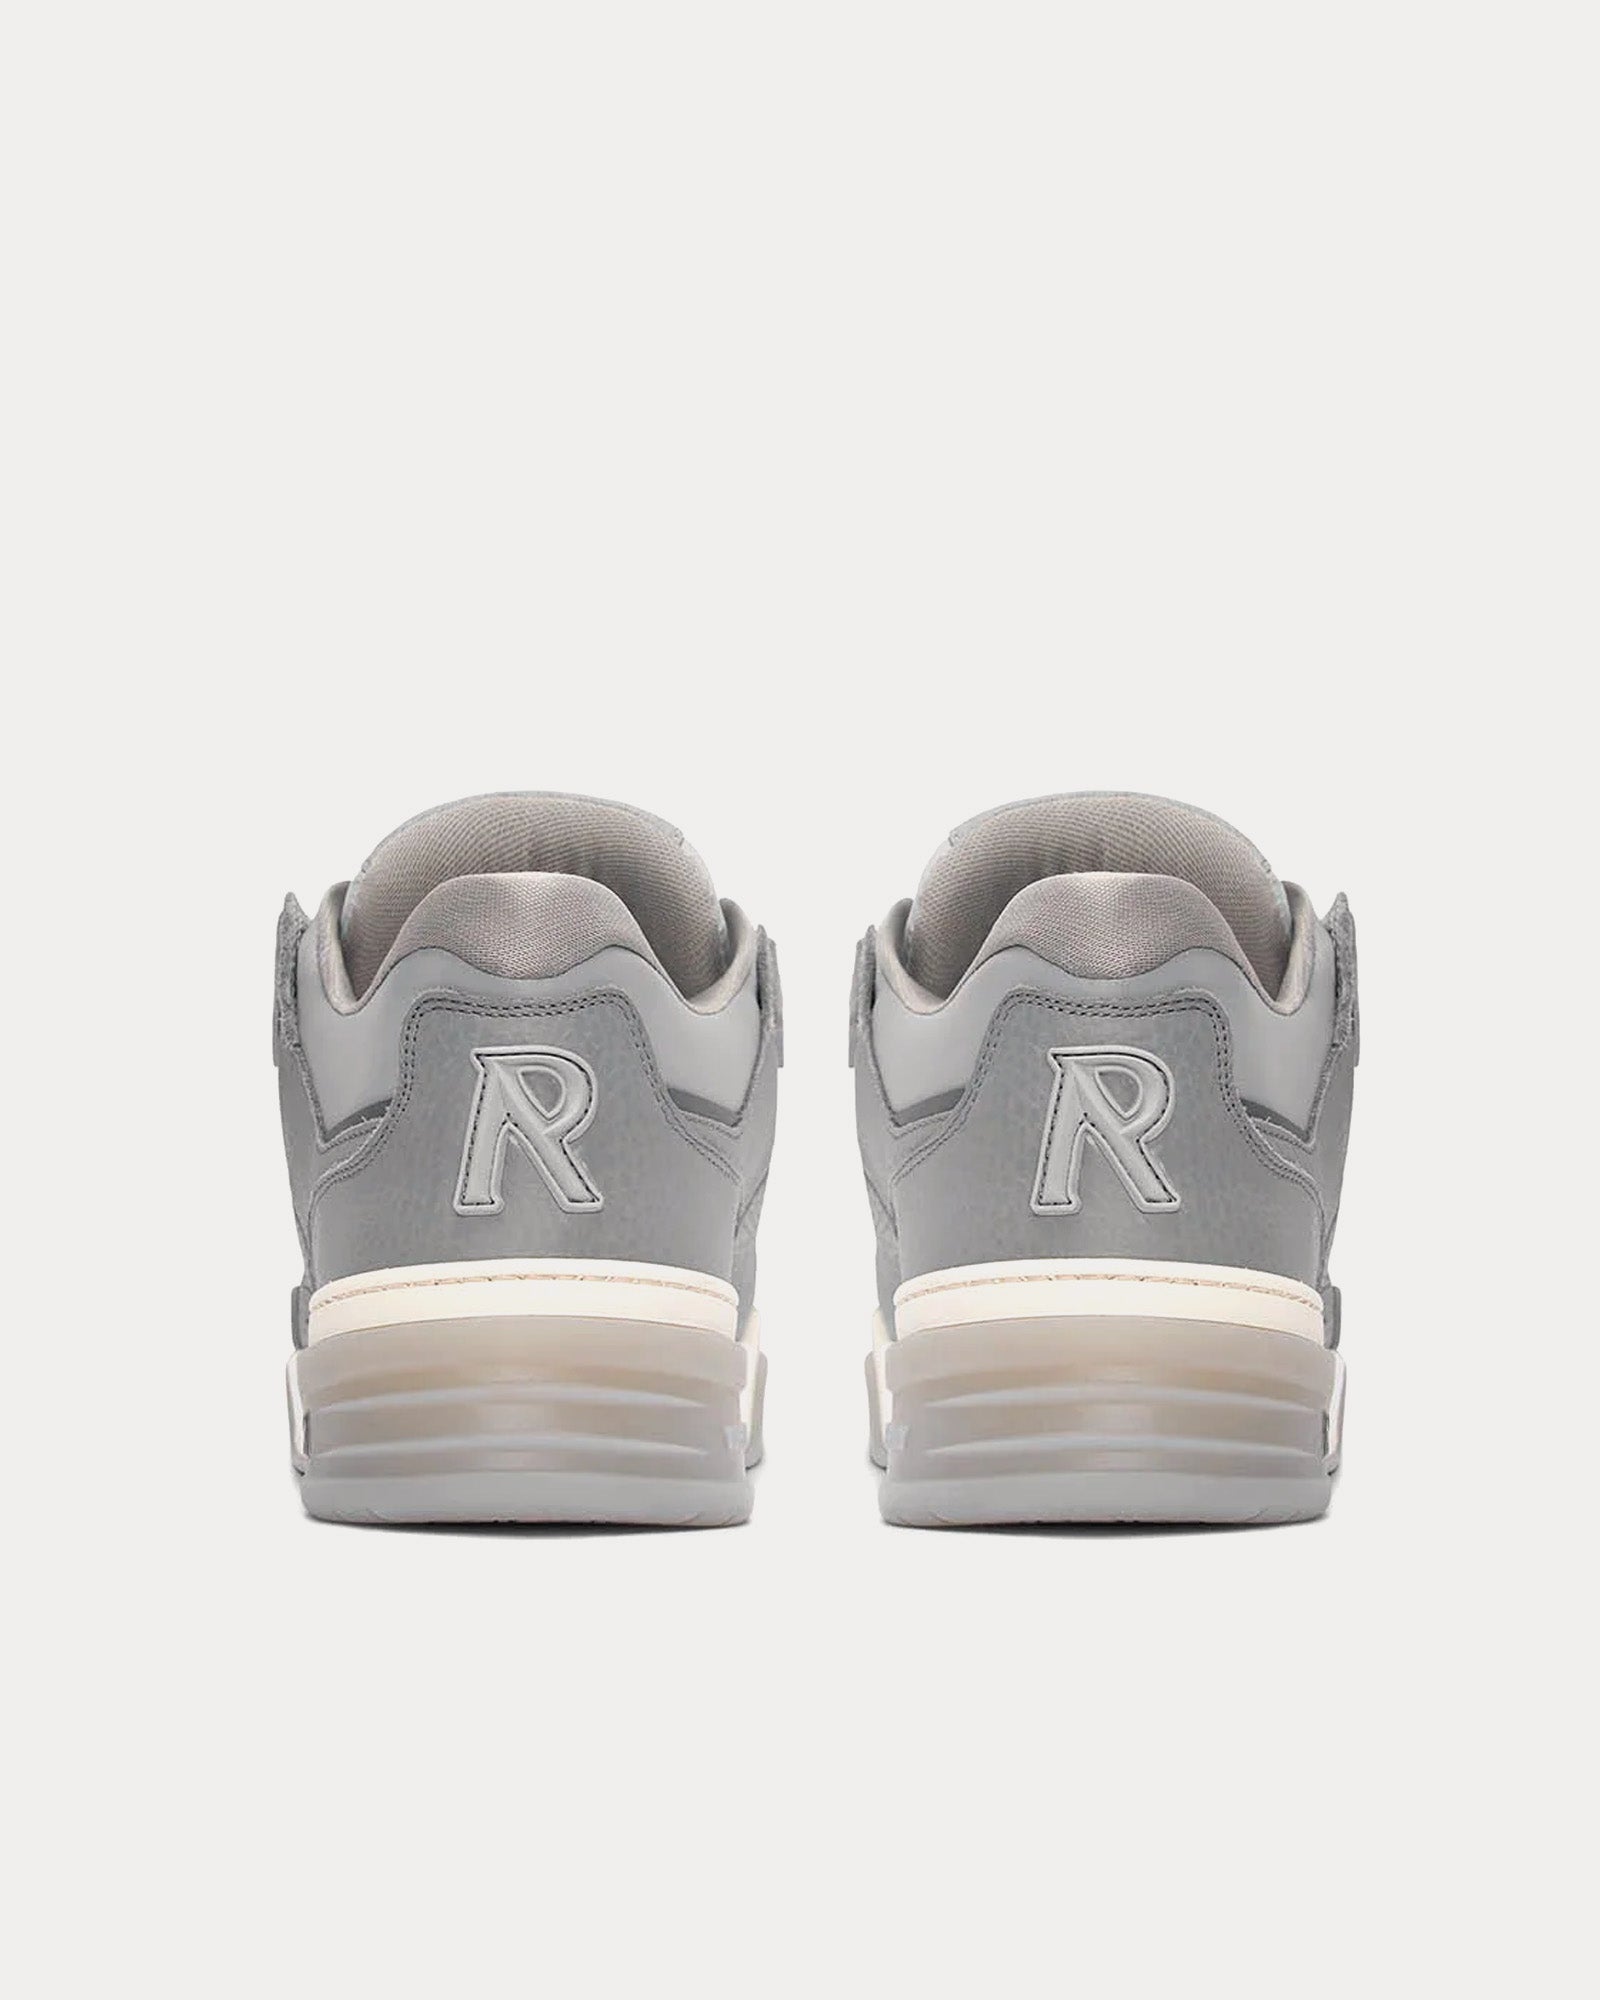 Represent - Studio Sneaker Grey Low Top Sneakers